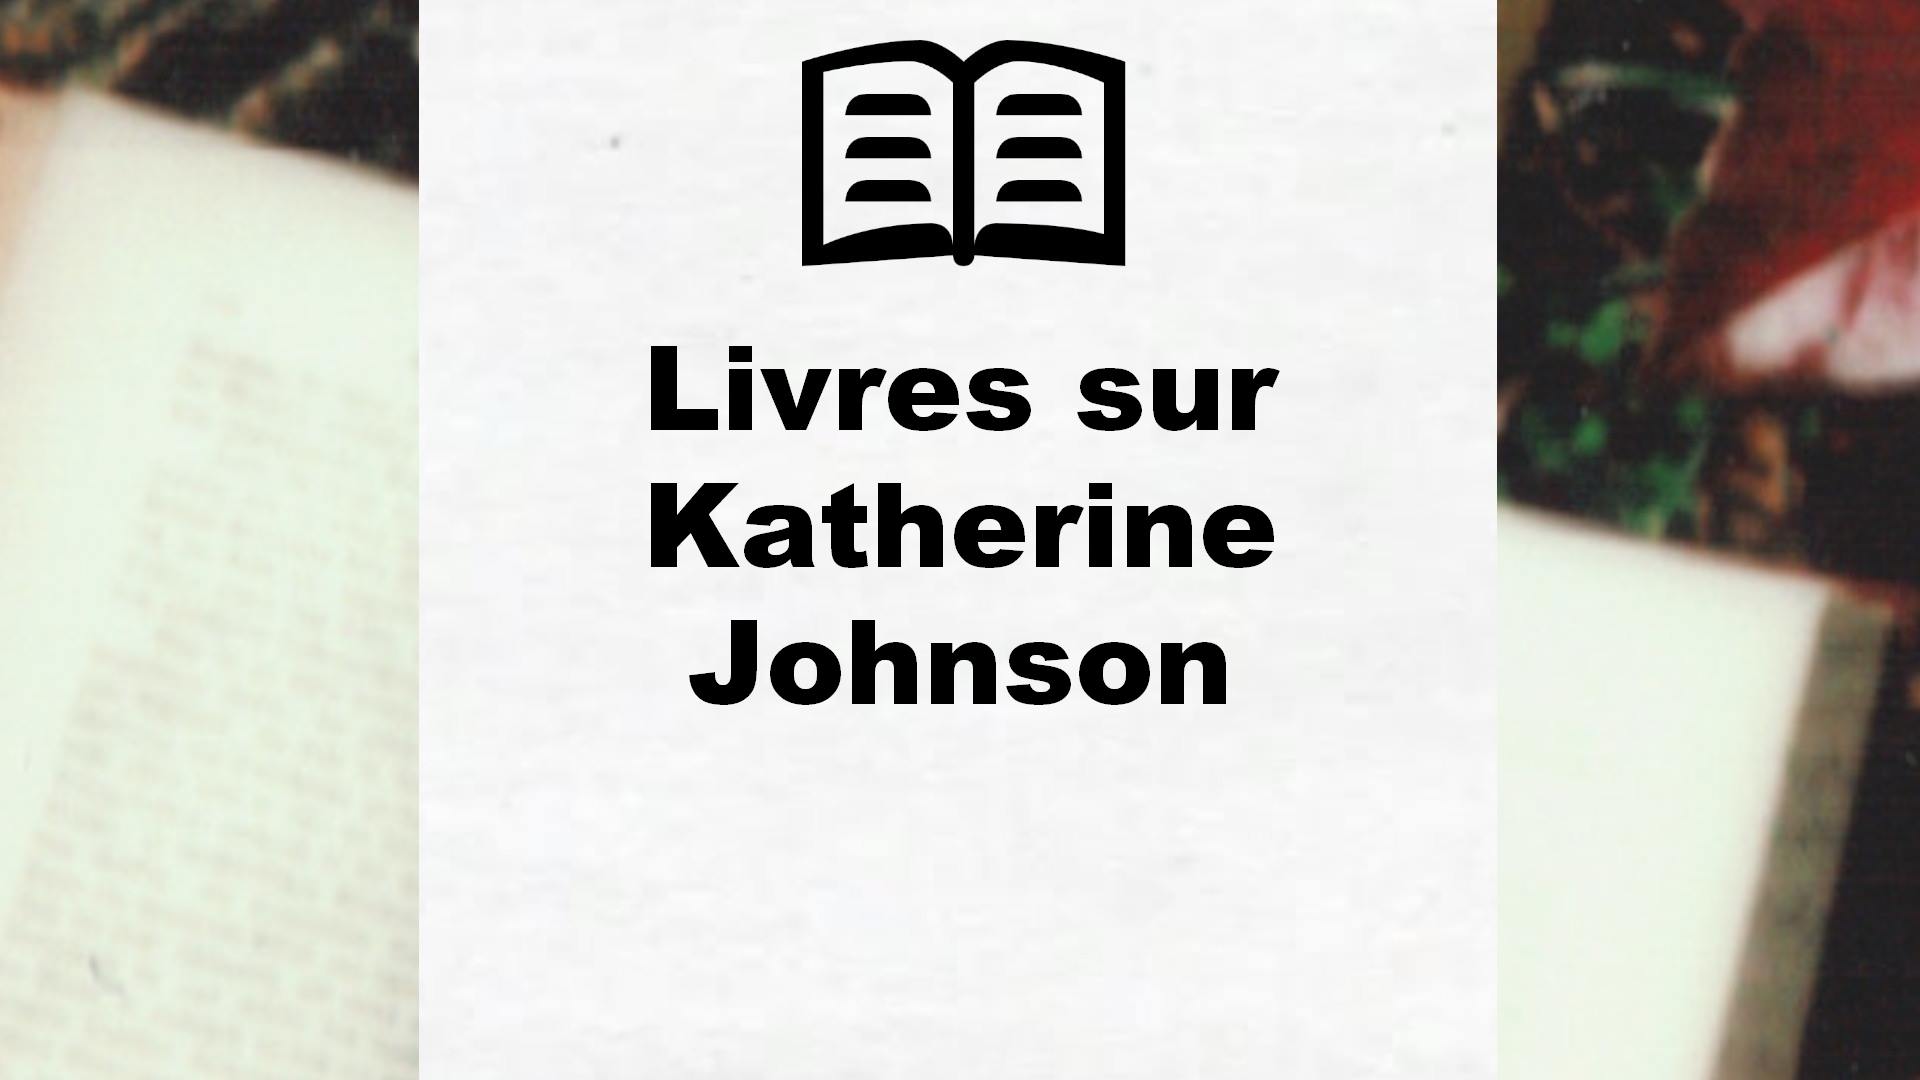 Livres sur Katherine Johnson